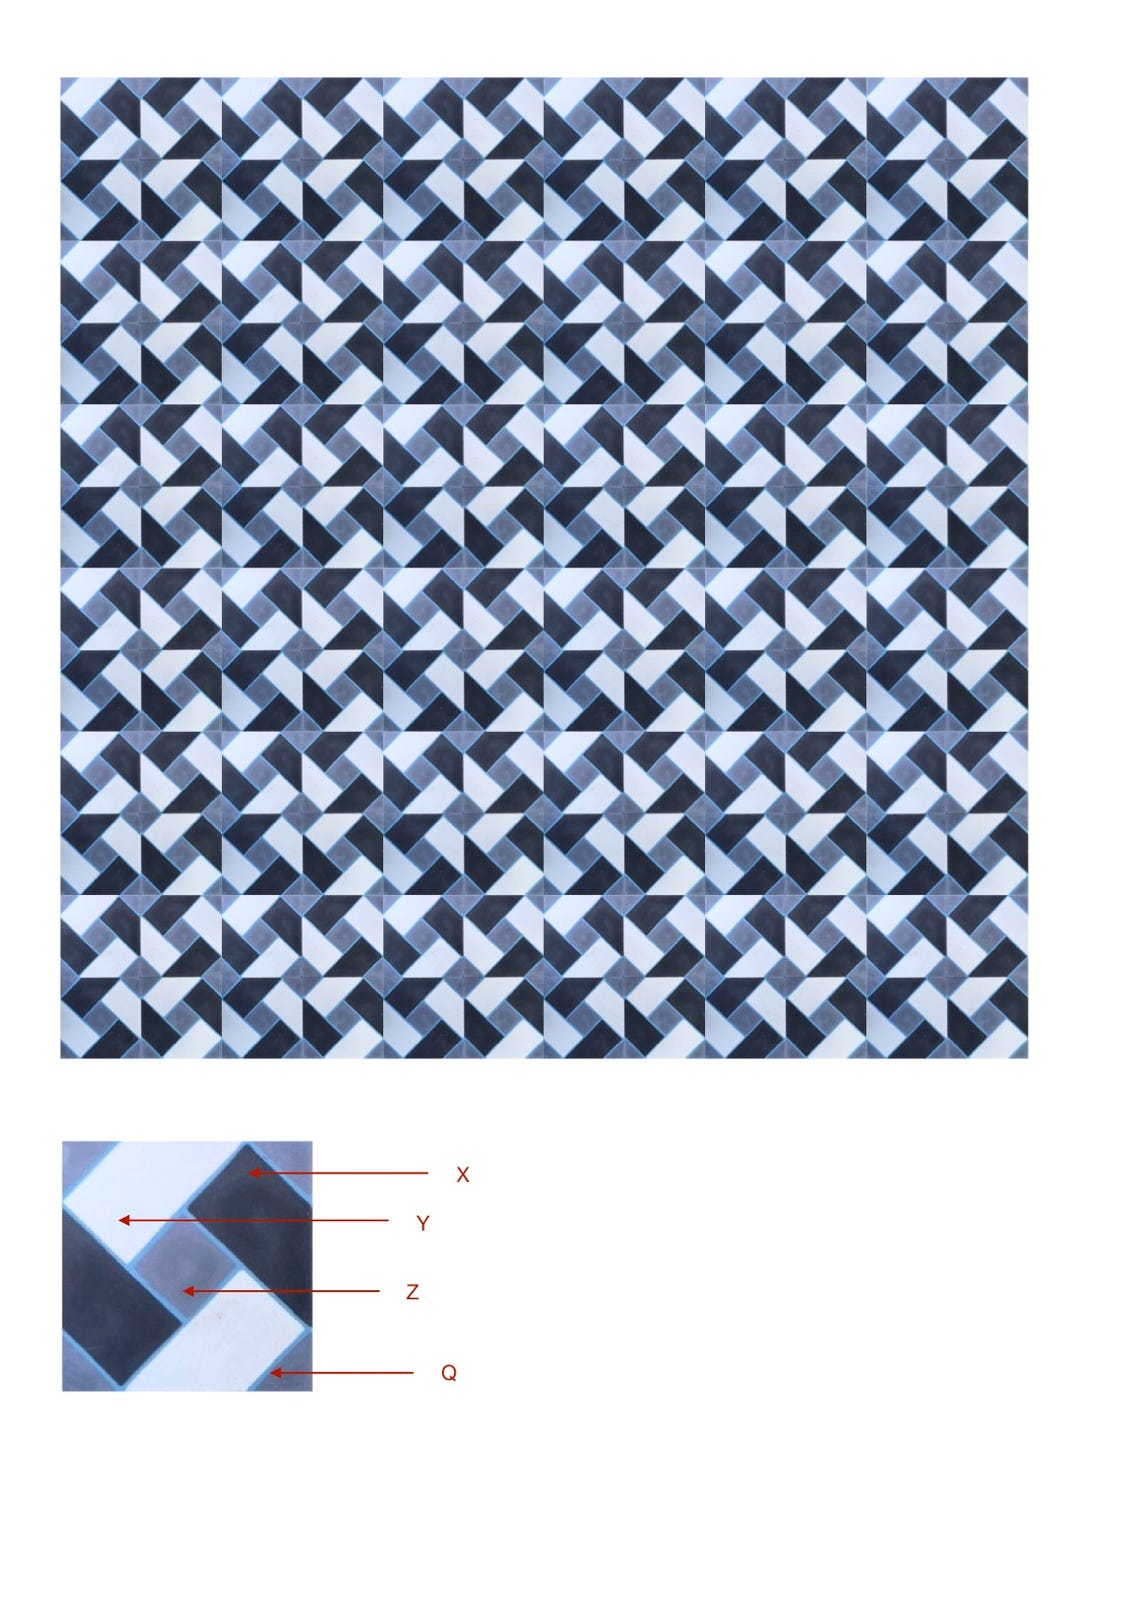 illustração de aplicação do mosaico hidráulico ref: Trança 4C